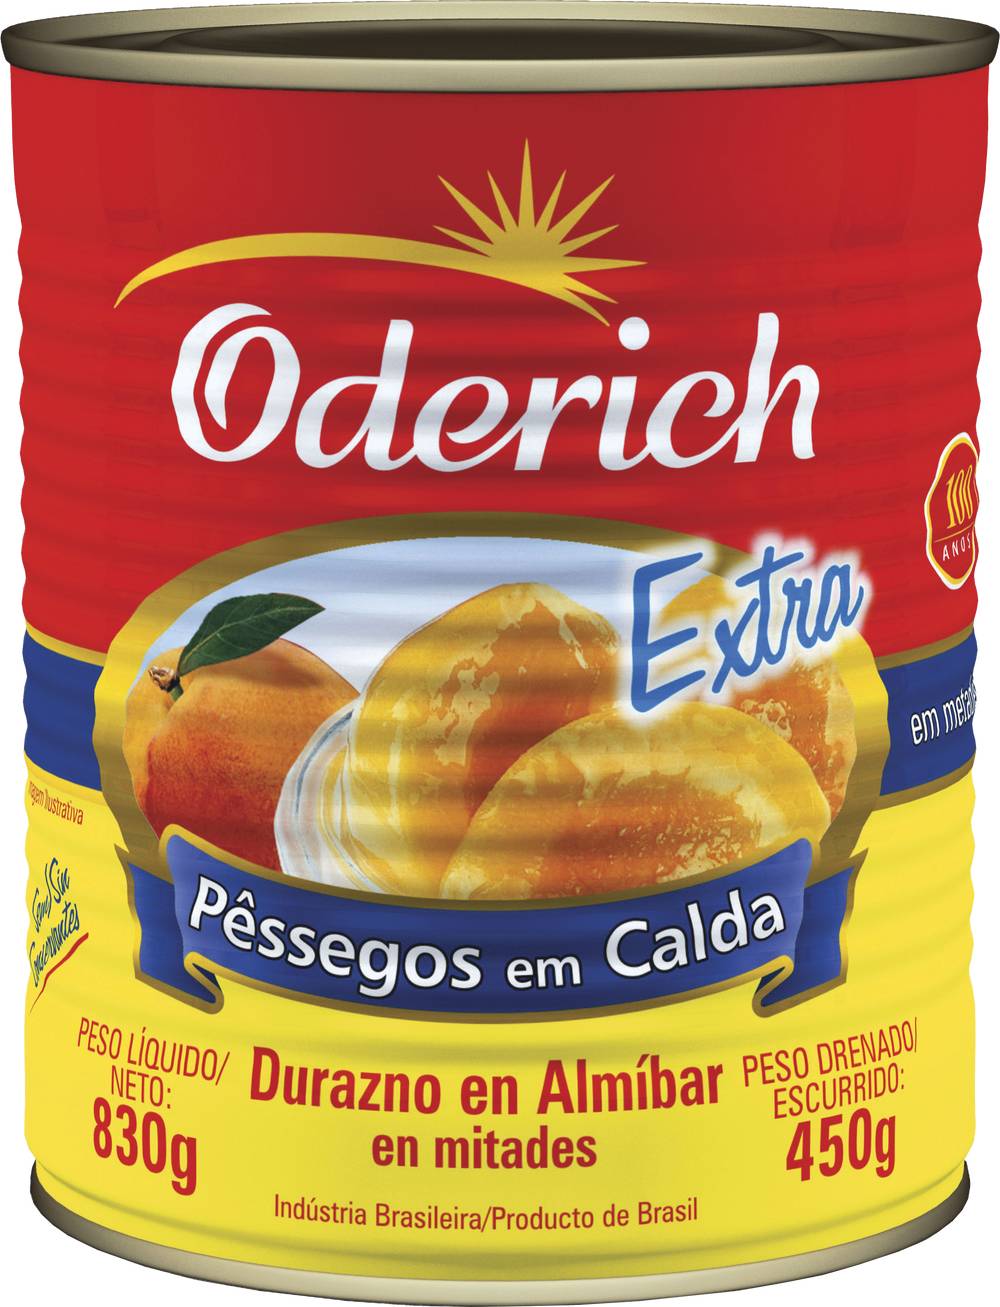 Oderich pêssegos em calda especial (450g)